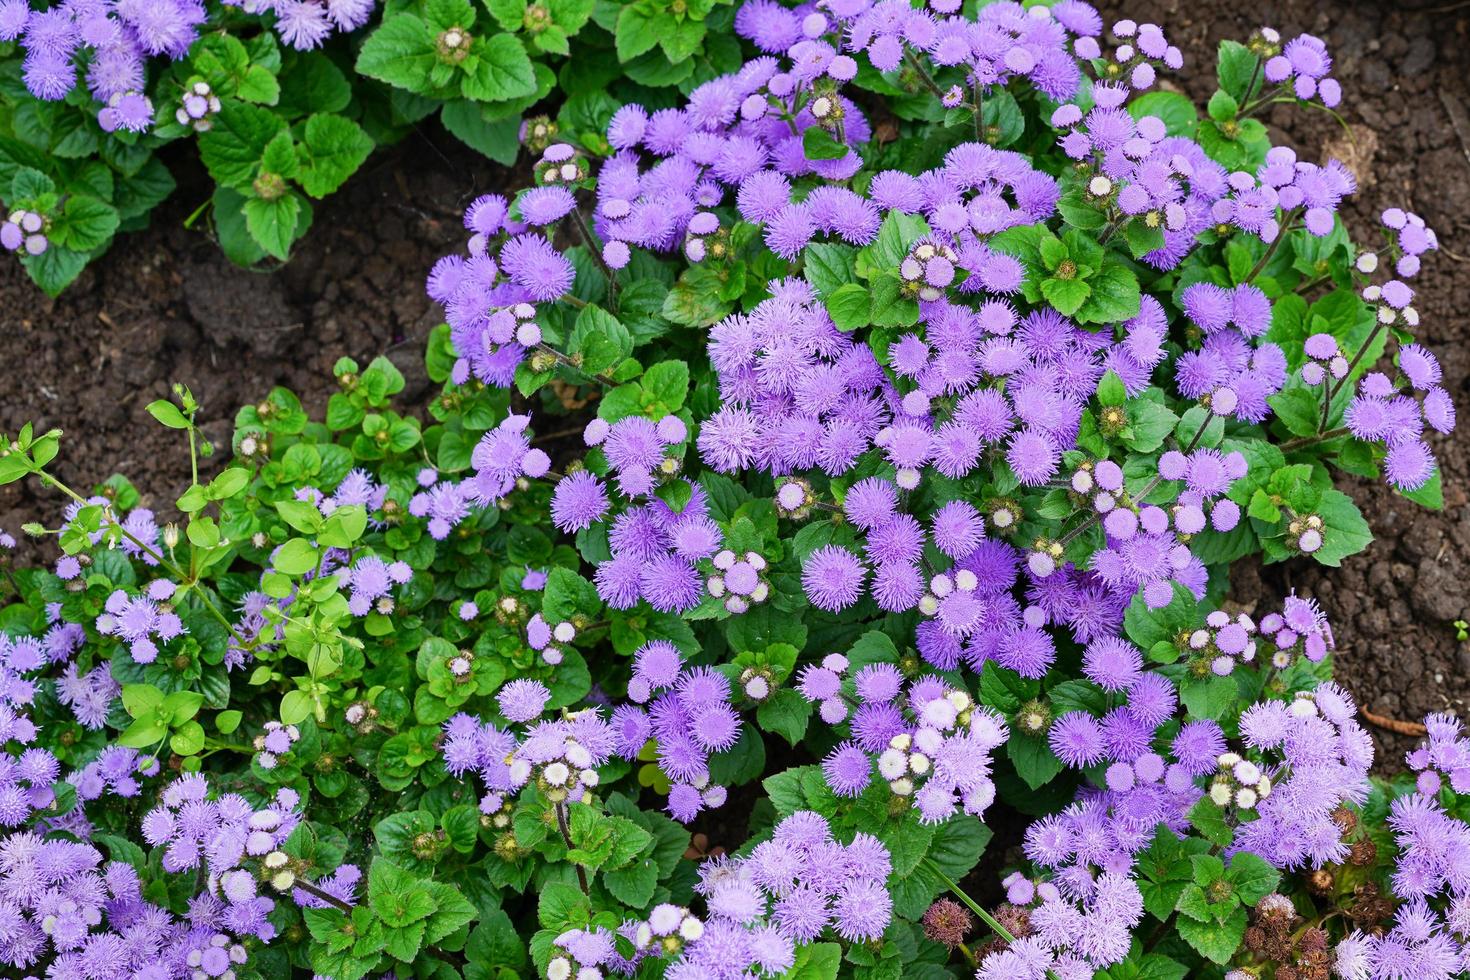 Purple flowers in a flower bed in a garden photo